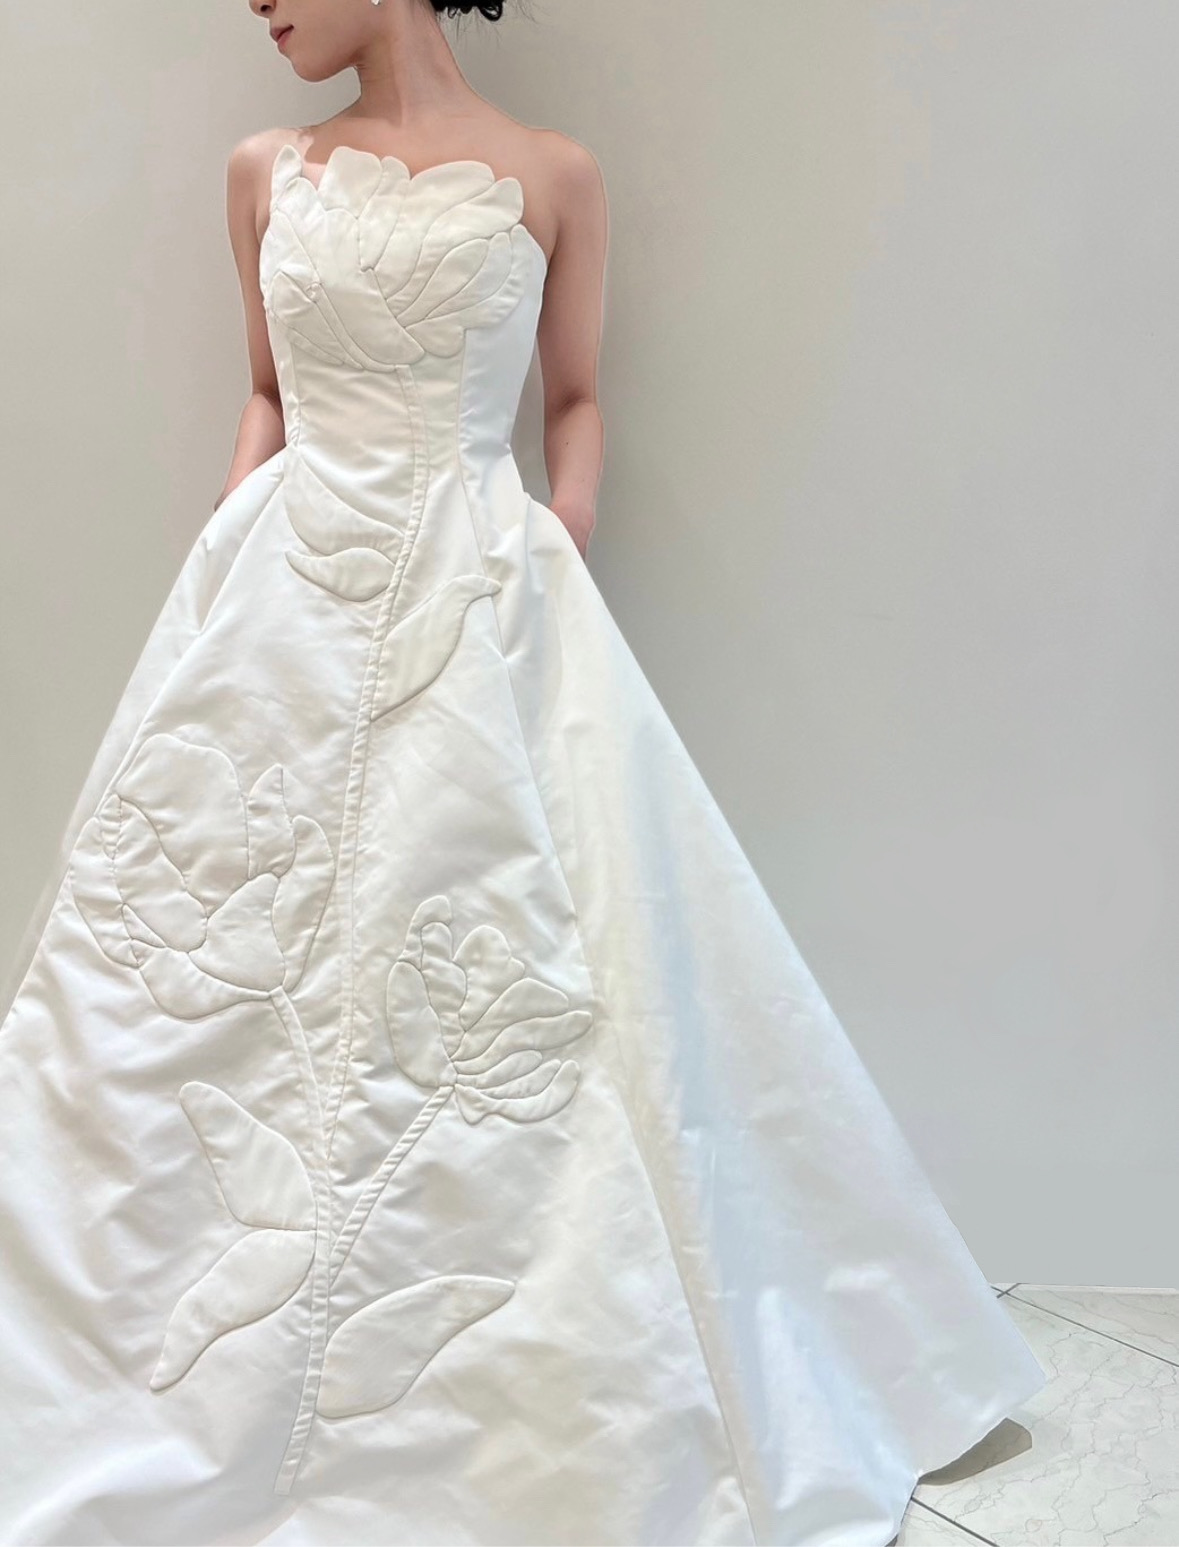 神戸の花嫁におすすめのレラローズの新作のAラインの胸元のチューリップのハンドペイントが美しくおしゃれなウェディングドレスを挙式と披露宴のコーディネートと共にご紹介させていただきます。